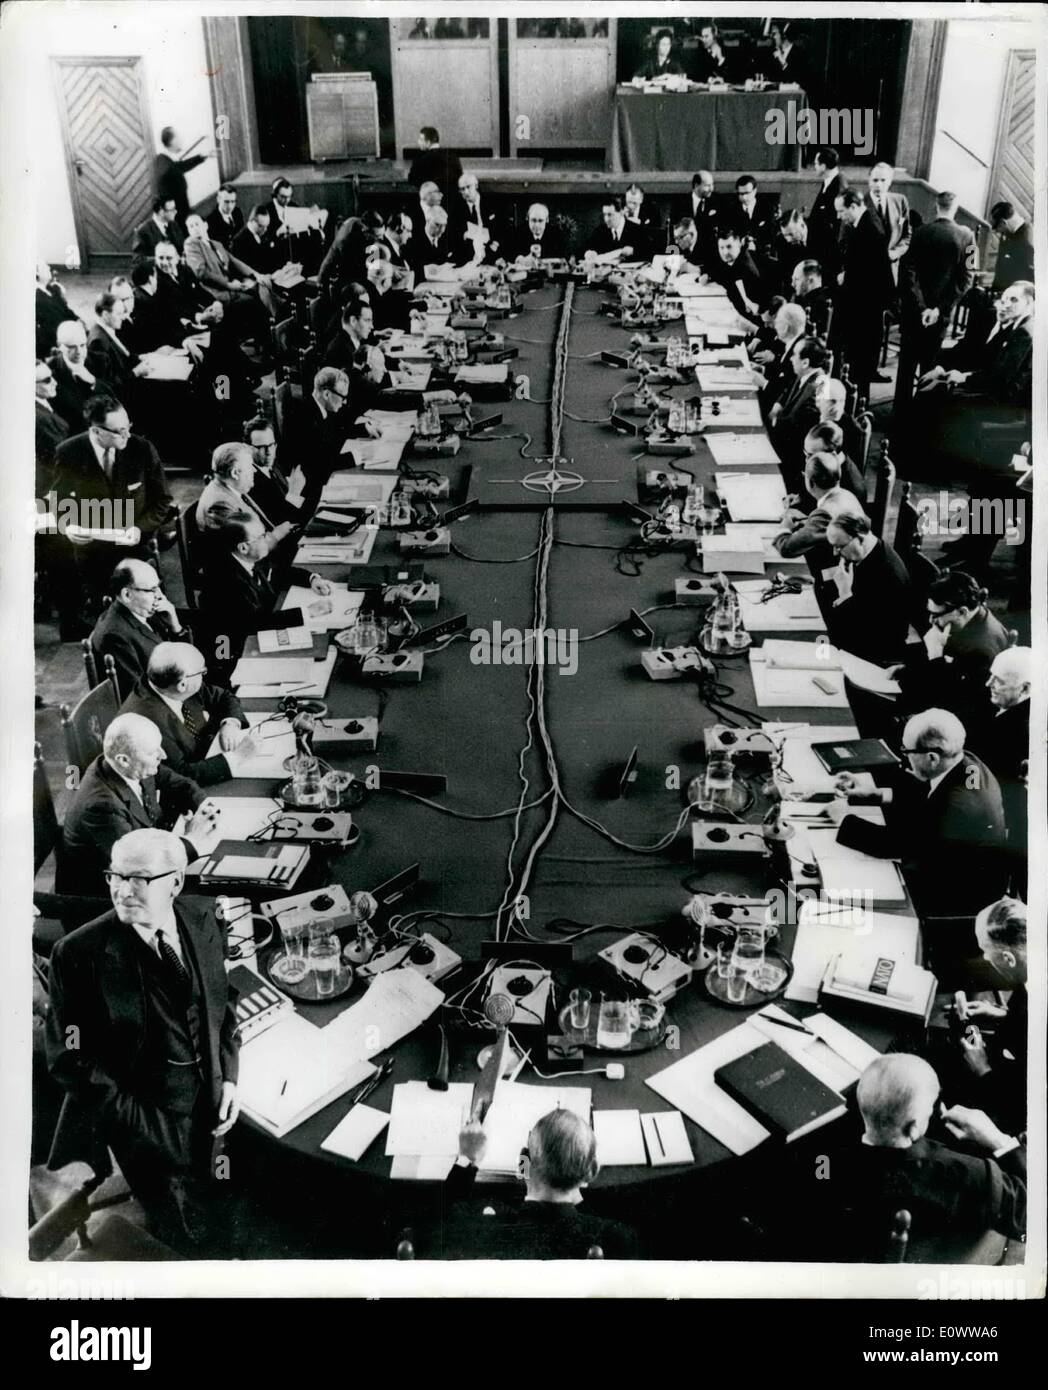 Maggio 05, 1964 - N.A.T.O. I Ministri degli esteri si incontrano: la riunione annuale di primavera dell'Organizzazione del Trattato del Nord Atlantico ministri degli Affari Esteri si terrà ad Amsterdam. Tra i temi discussi sono il commercio con Cuba, la situazione di Cipro. Aden, a Saigon. La foto mostra il consiglio ministeriale nella sessione presso l'aia di oggi. Il ministro degli Affari Esteri britannico, il sig. R.A. Butler può essere visto sul lato destro. Foto Stock